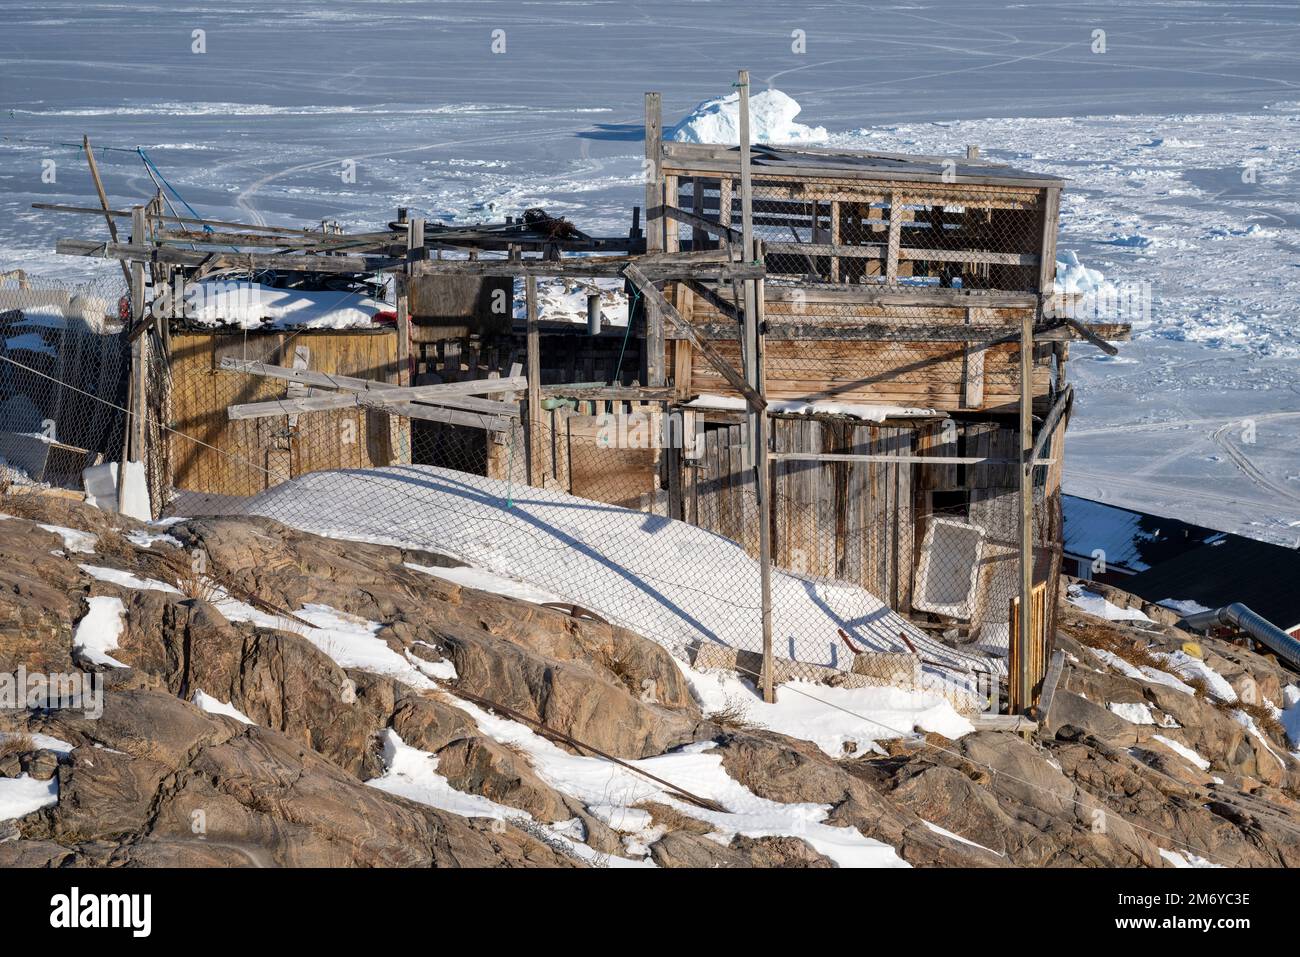 Un chenil à plusieurs étages en manille dans la ville d'Uummannaq, à l'ouest du Groenland. Banque D'Images